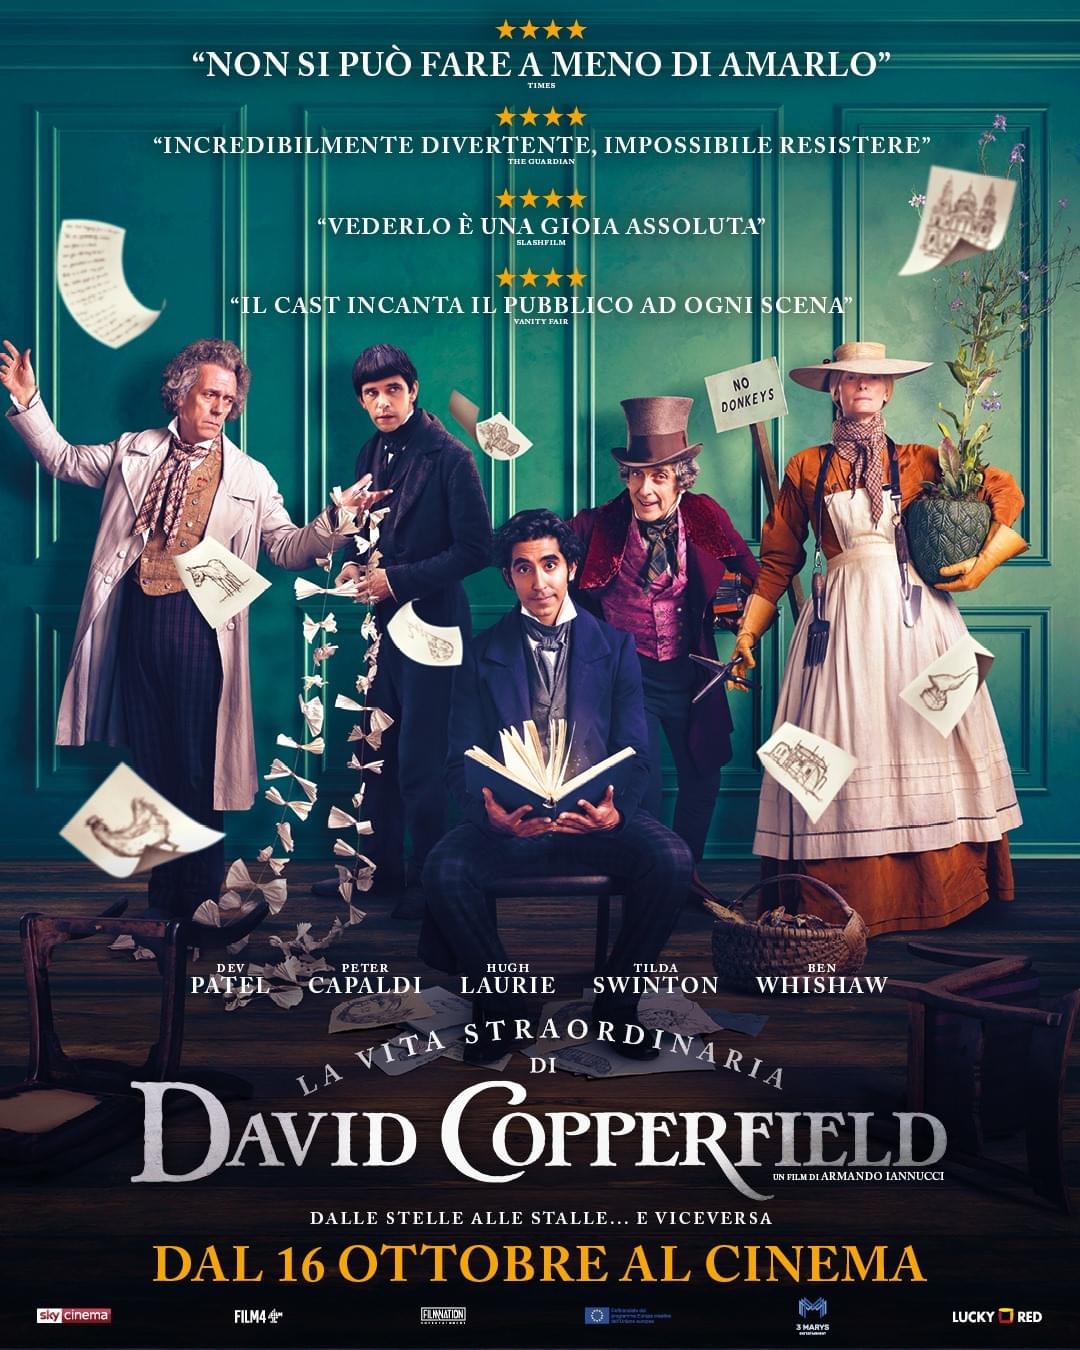 CINEMA AL CONCORDIA - "LA STRAORDINARIA VITA DI  DAVID COPPERFIELD"